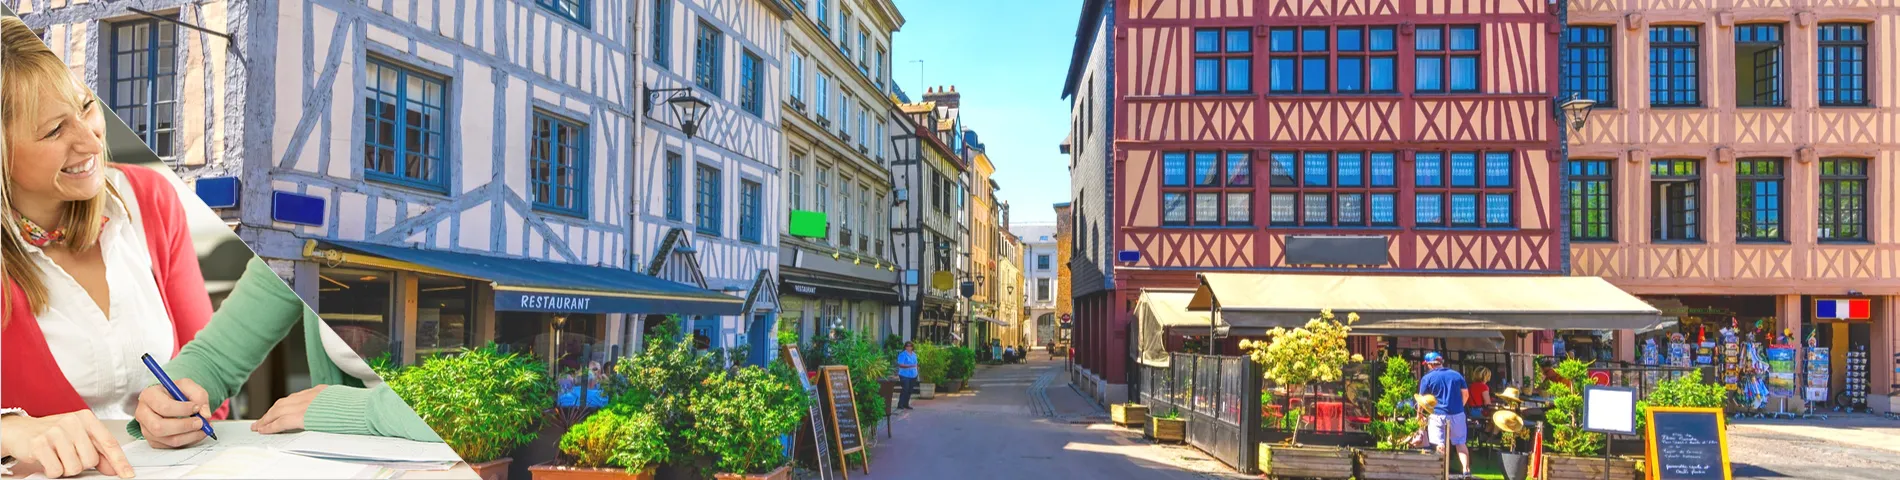 Rouen - Estude uma língua & more na casa do seu professor